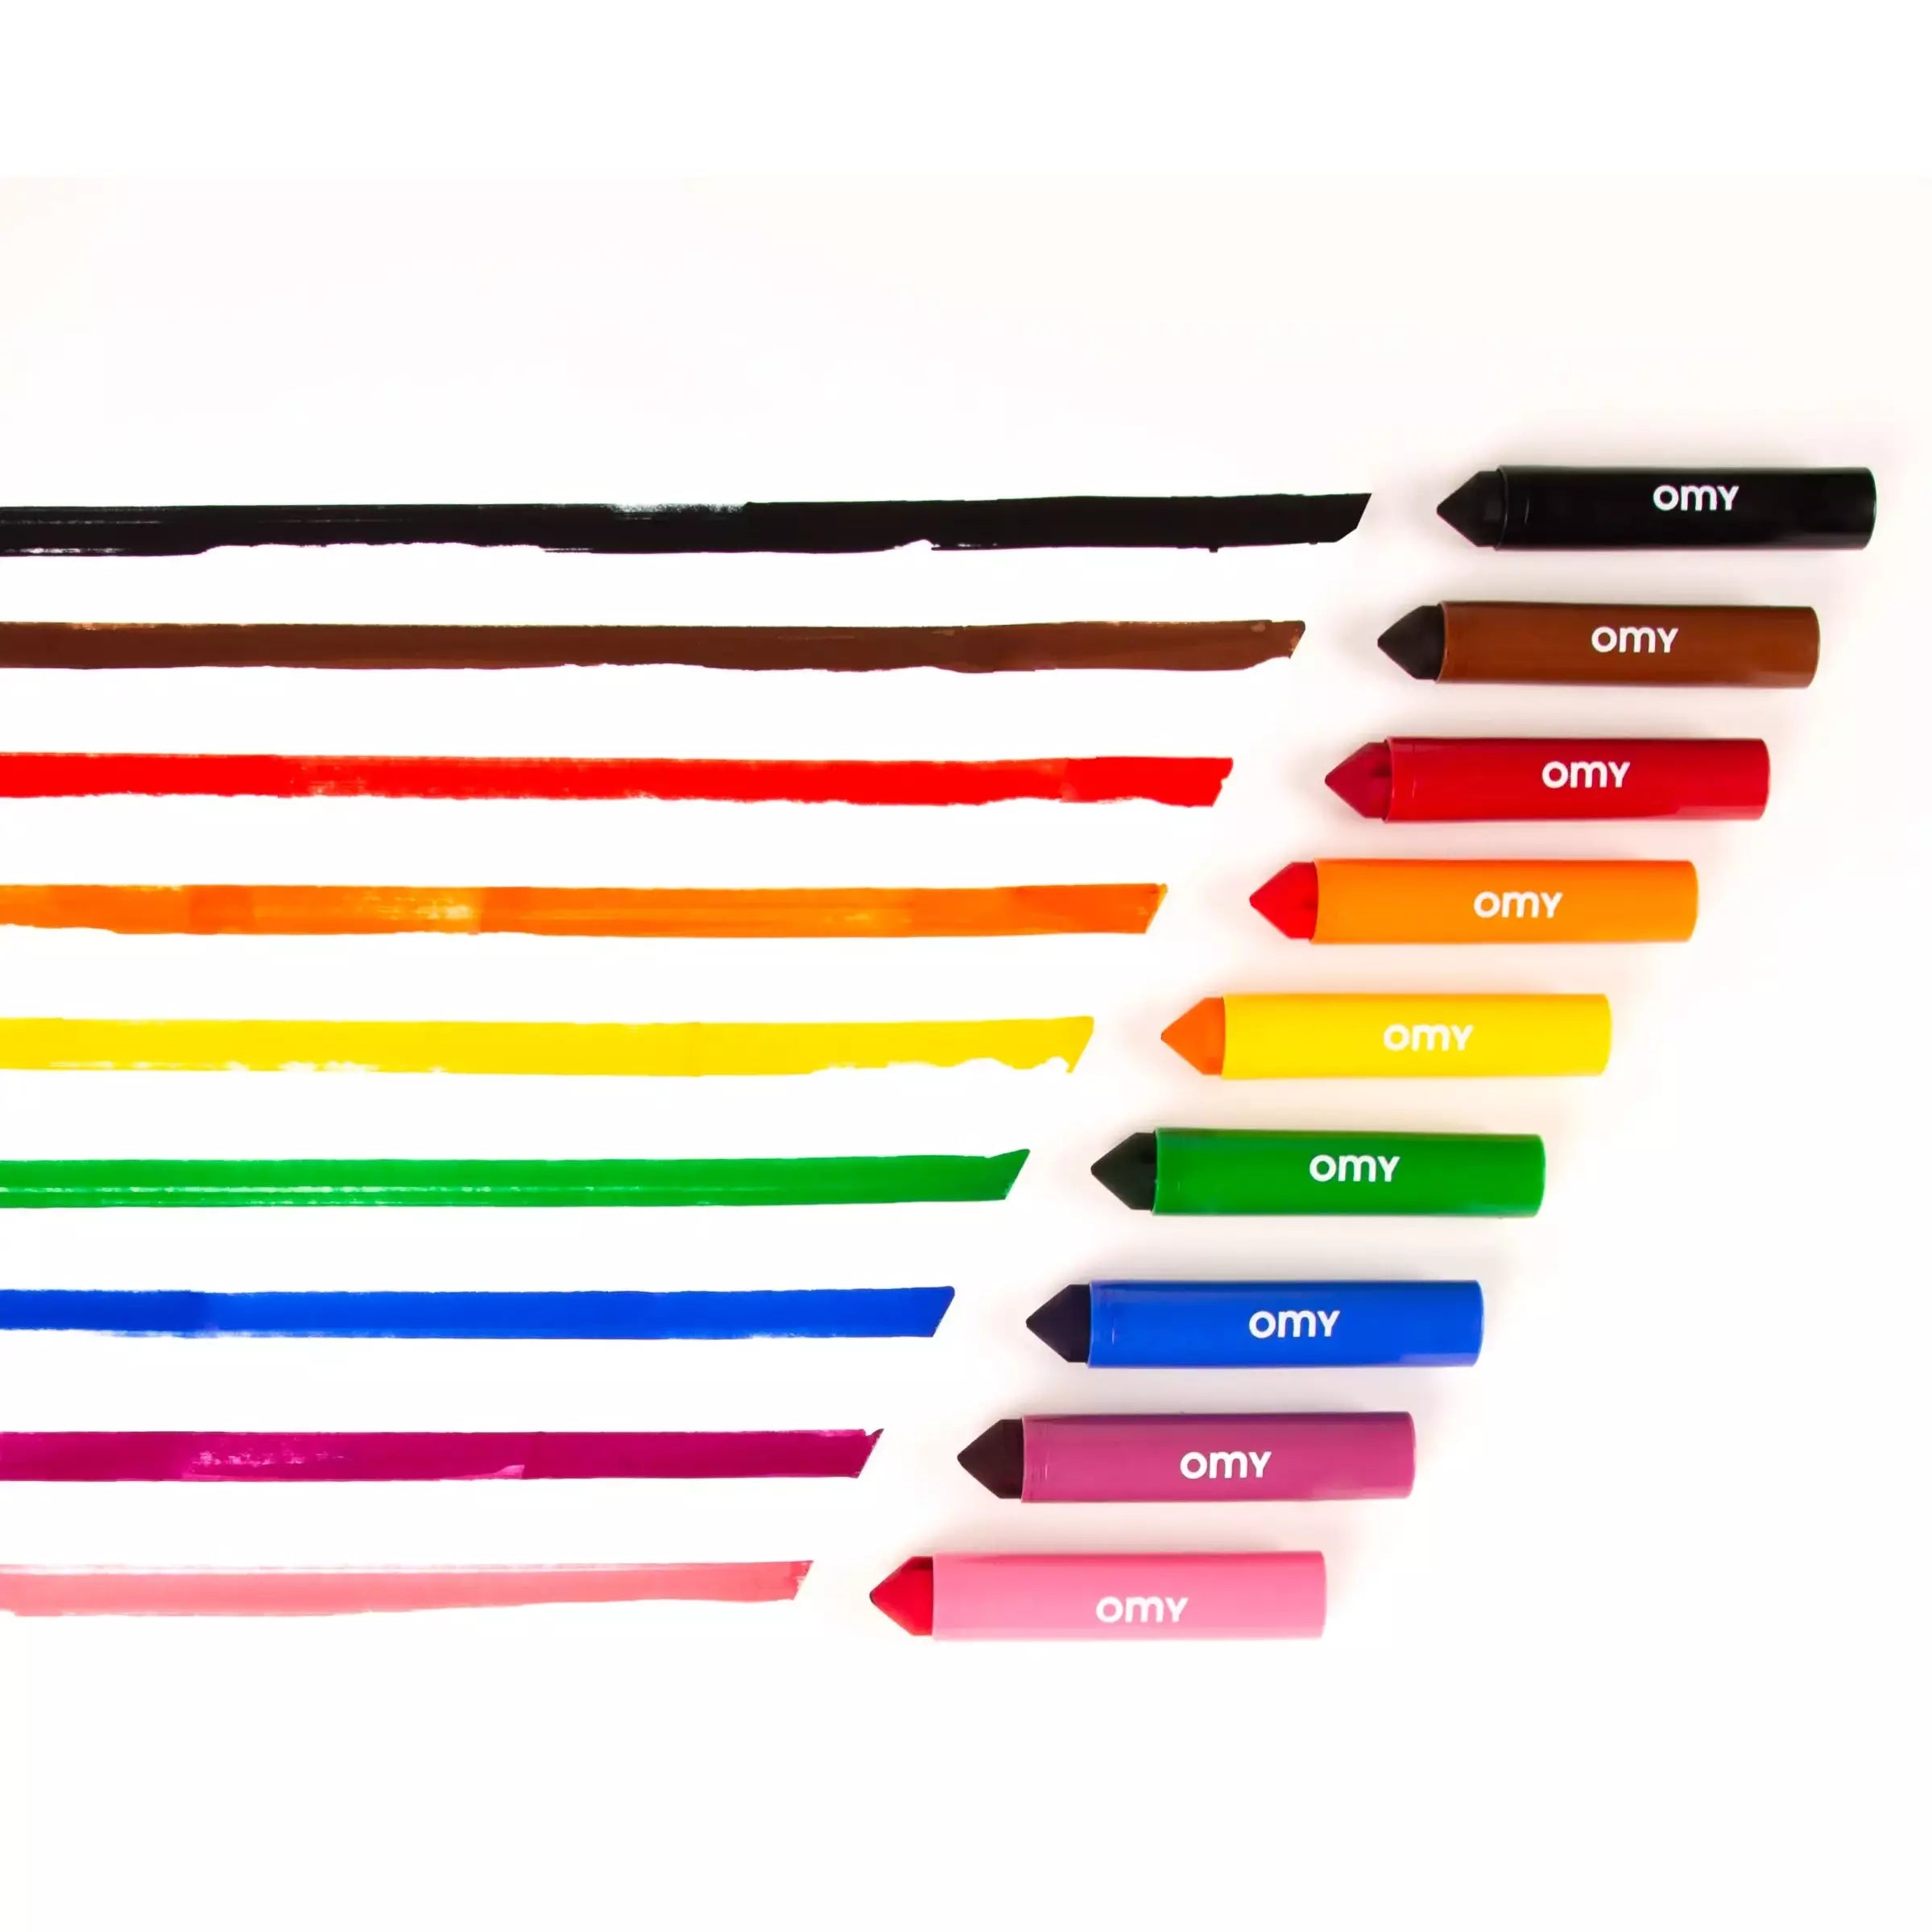 kodomo - omy set of 16 ultra washable markers